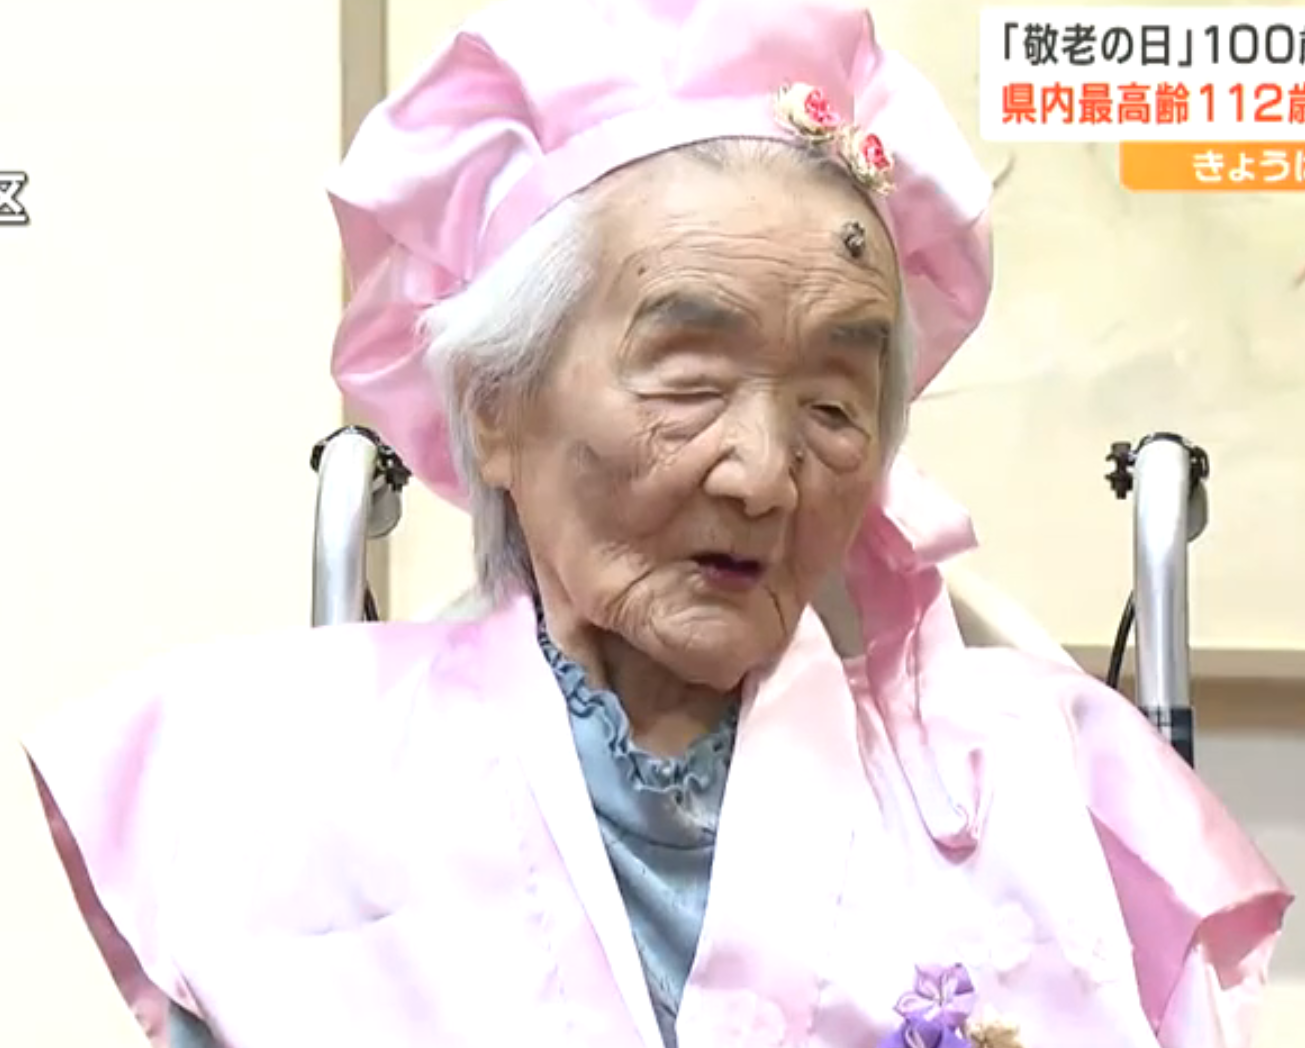 In September 2023, aged 112. (Source: goo.ne.jp)